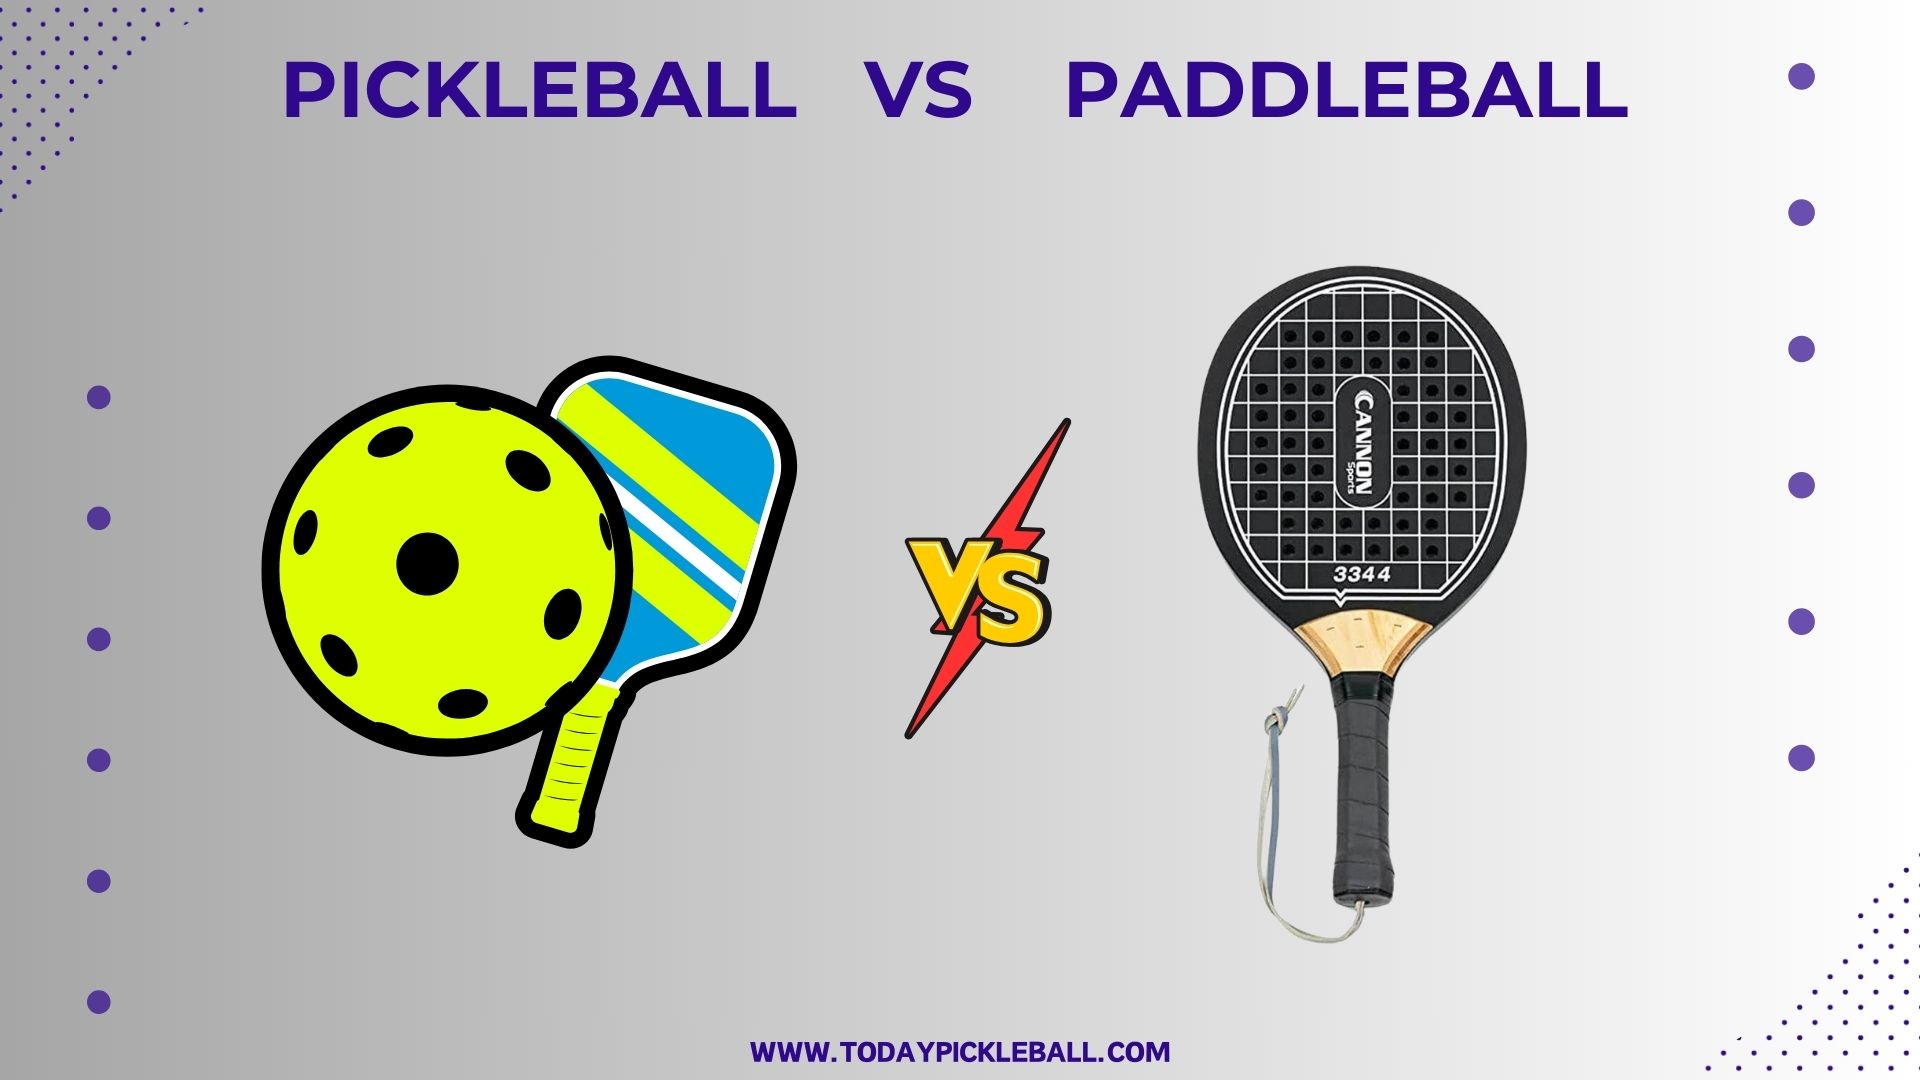 Pickleball vs Paddleball